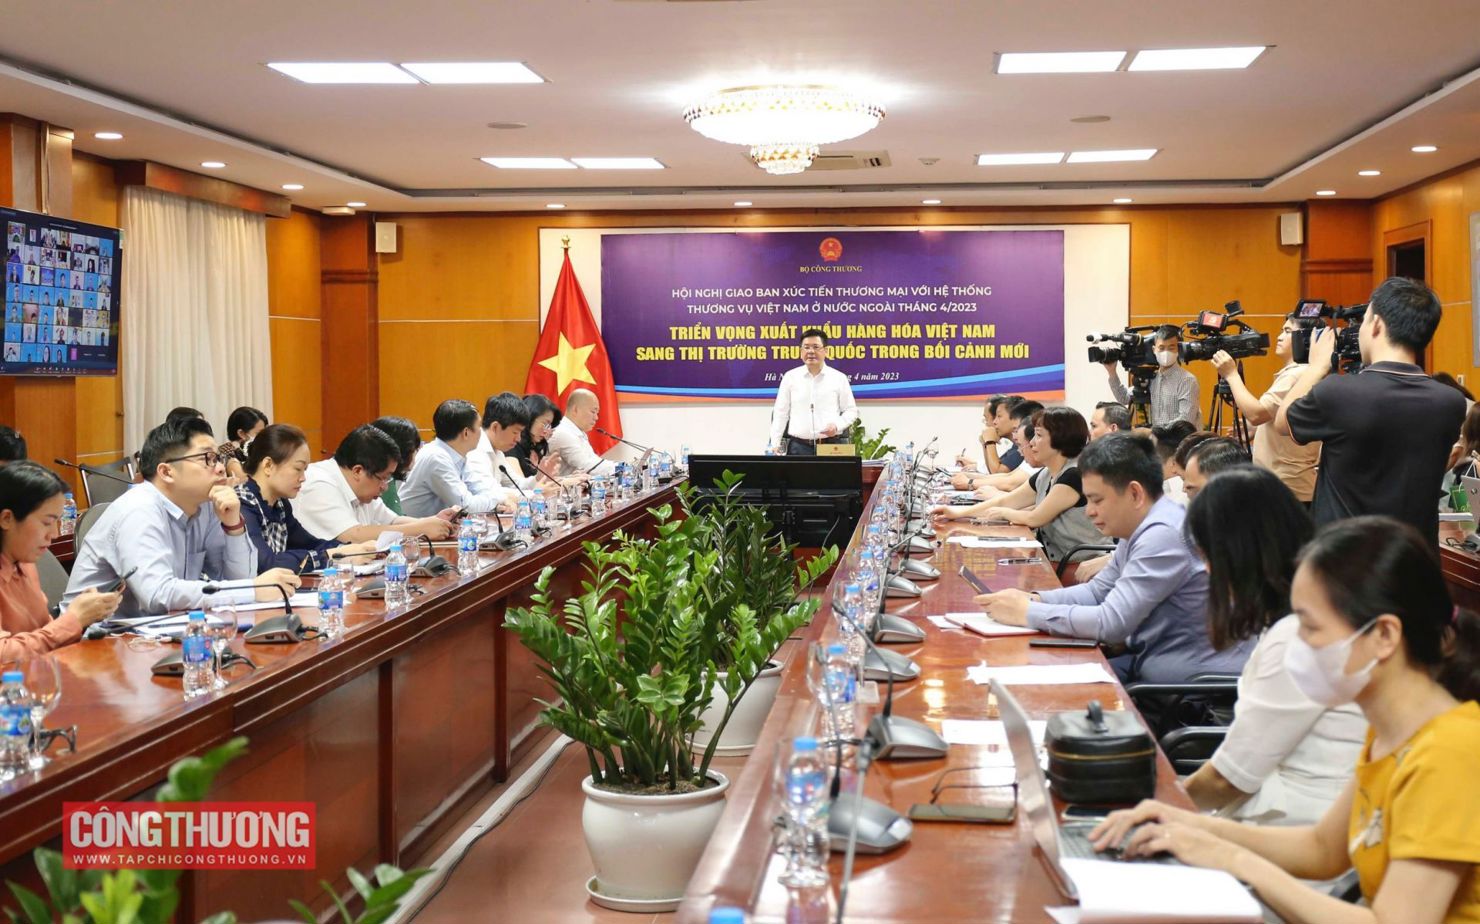 Hội nghị Giao ban Xúc tiến thương mại với hệ thống thương vụ Việt Nam ở nước ngoài tháng 4/20203 với chủ đề "Triển vọng xuất khẩu hàng hoá Việt Nam sang thị trường Trung Quốc trong bối cảnh mới".